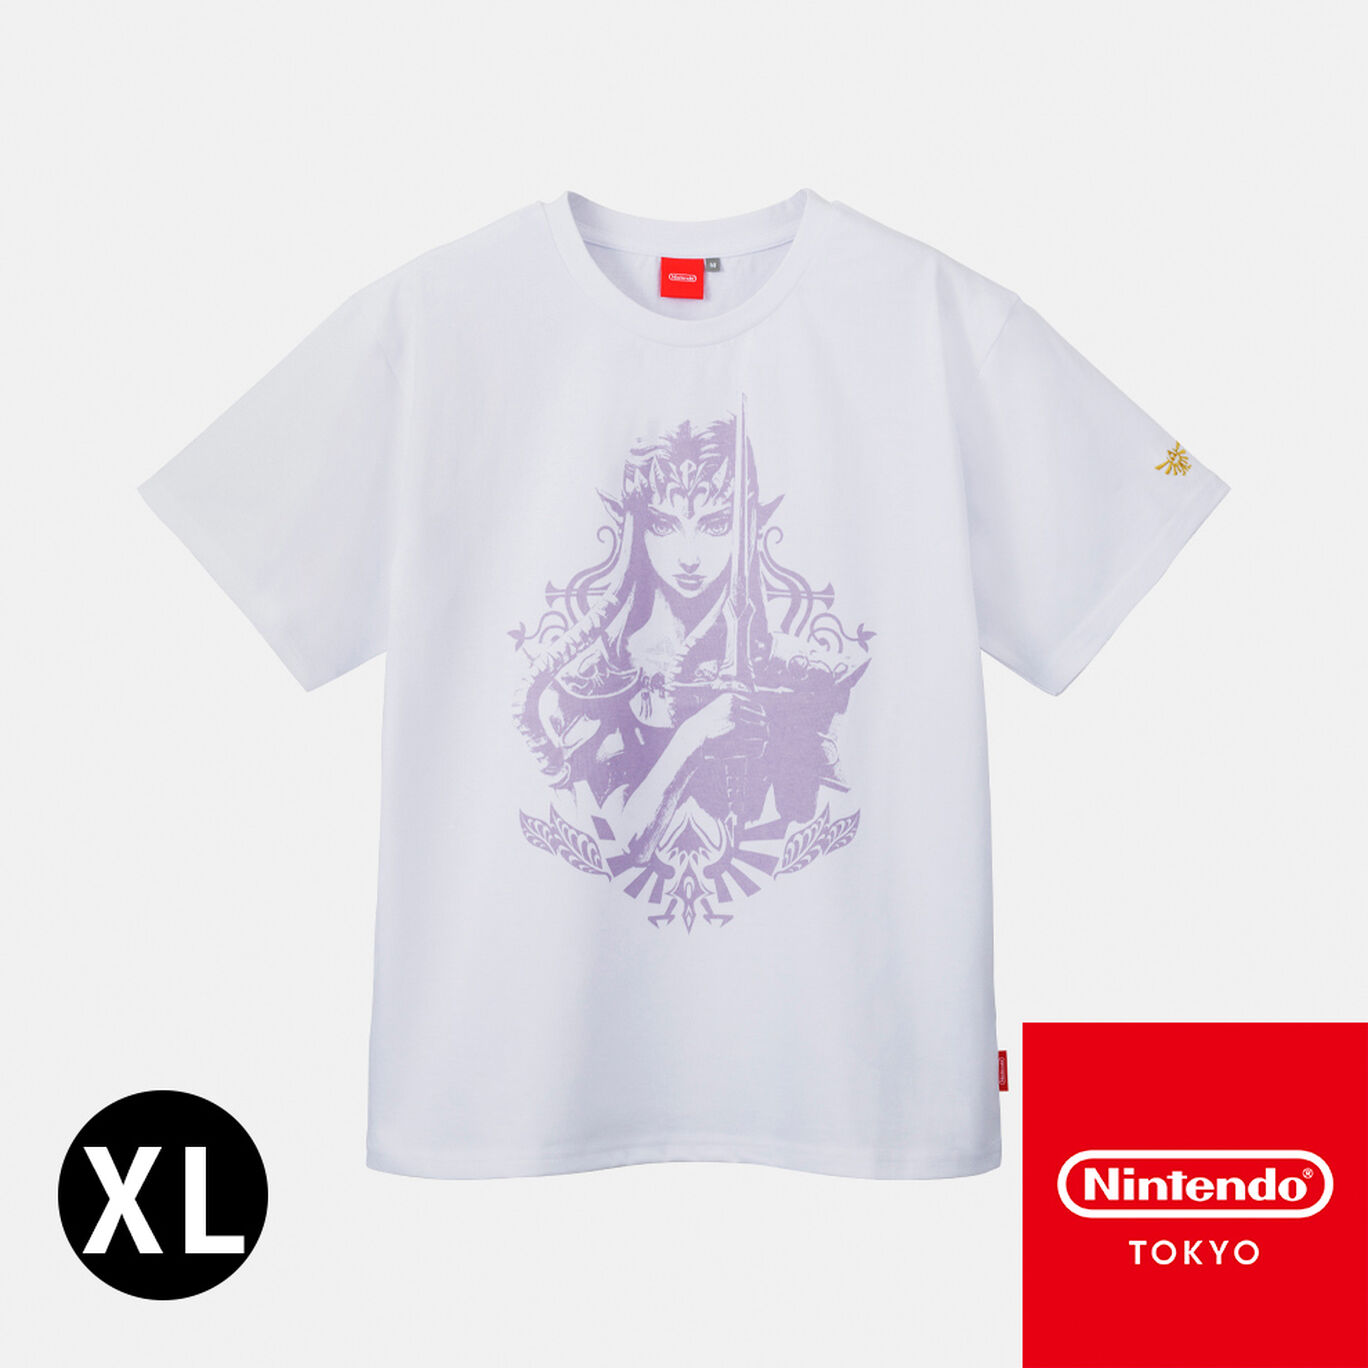 Tシャツ トライフォース ゼルダ XL ゼルダの伝説【Nintendo TOKYO取り扱い商品】